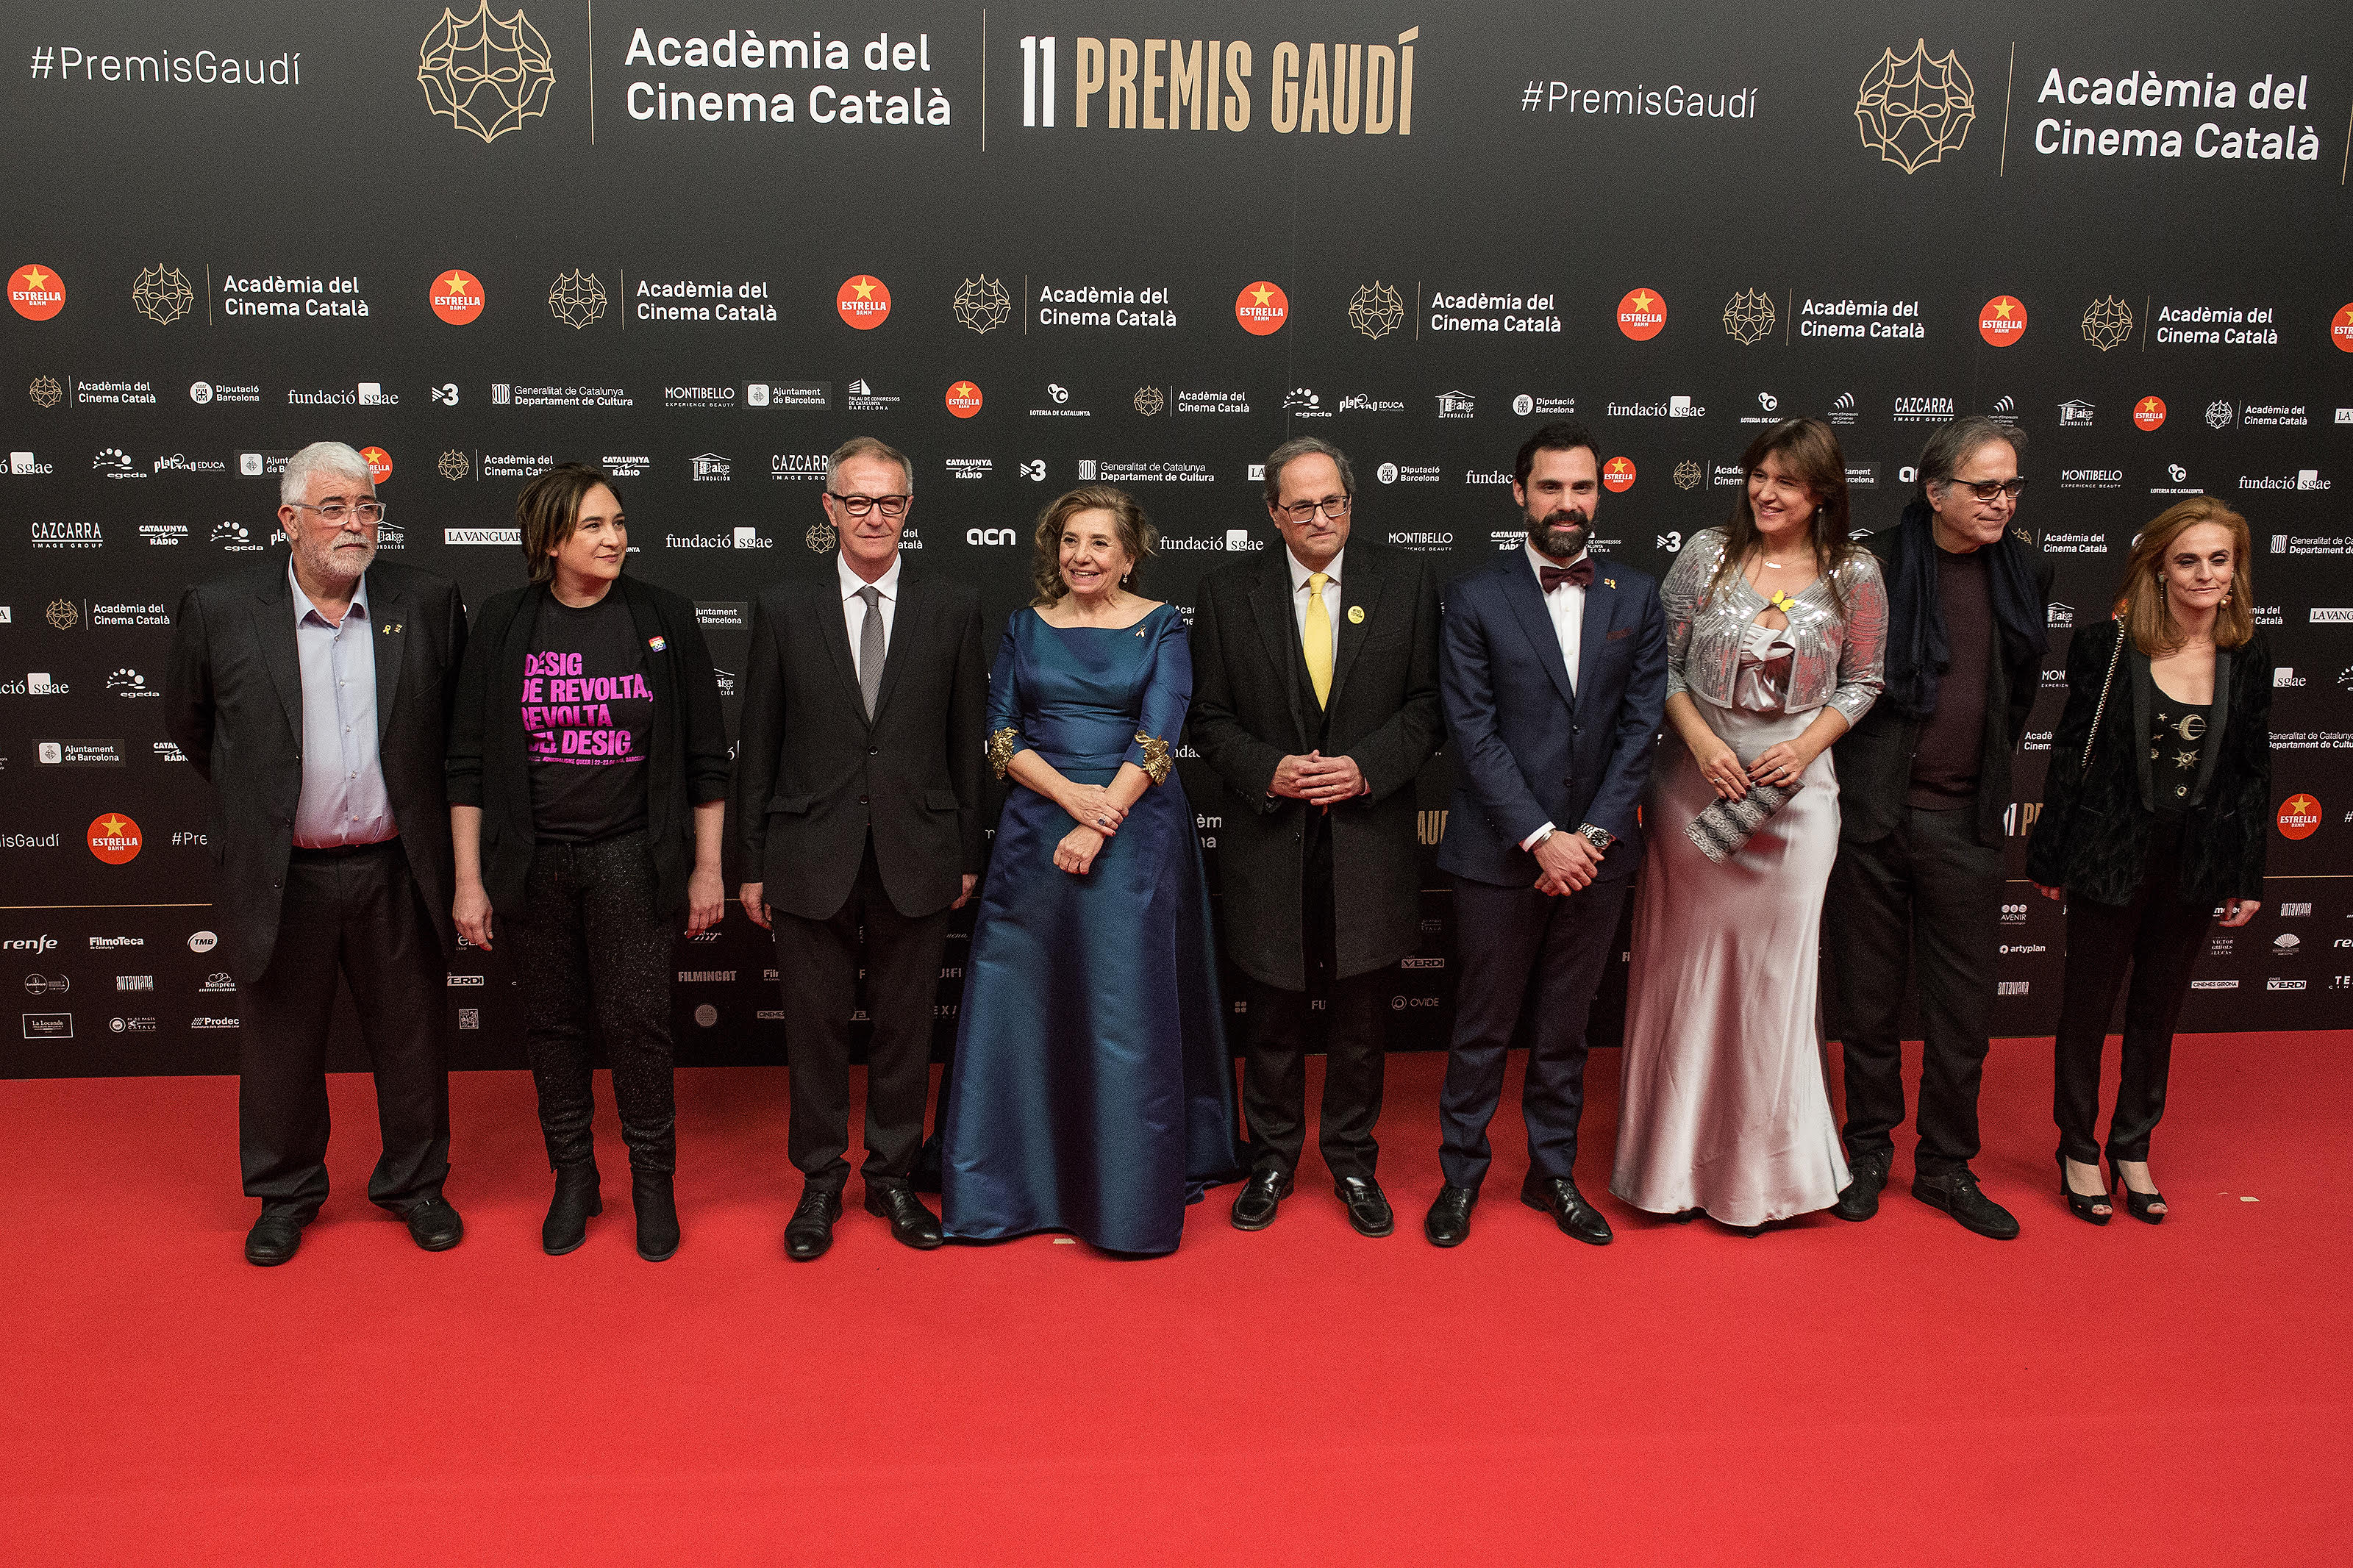 La reivindicación política no abandona a los premios Gaudí